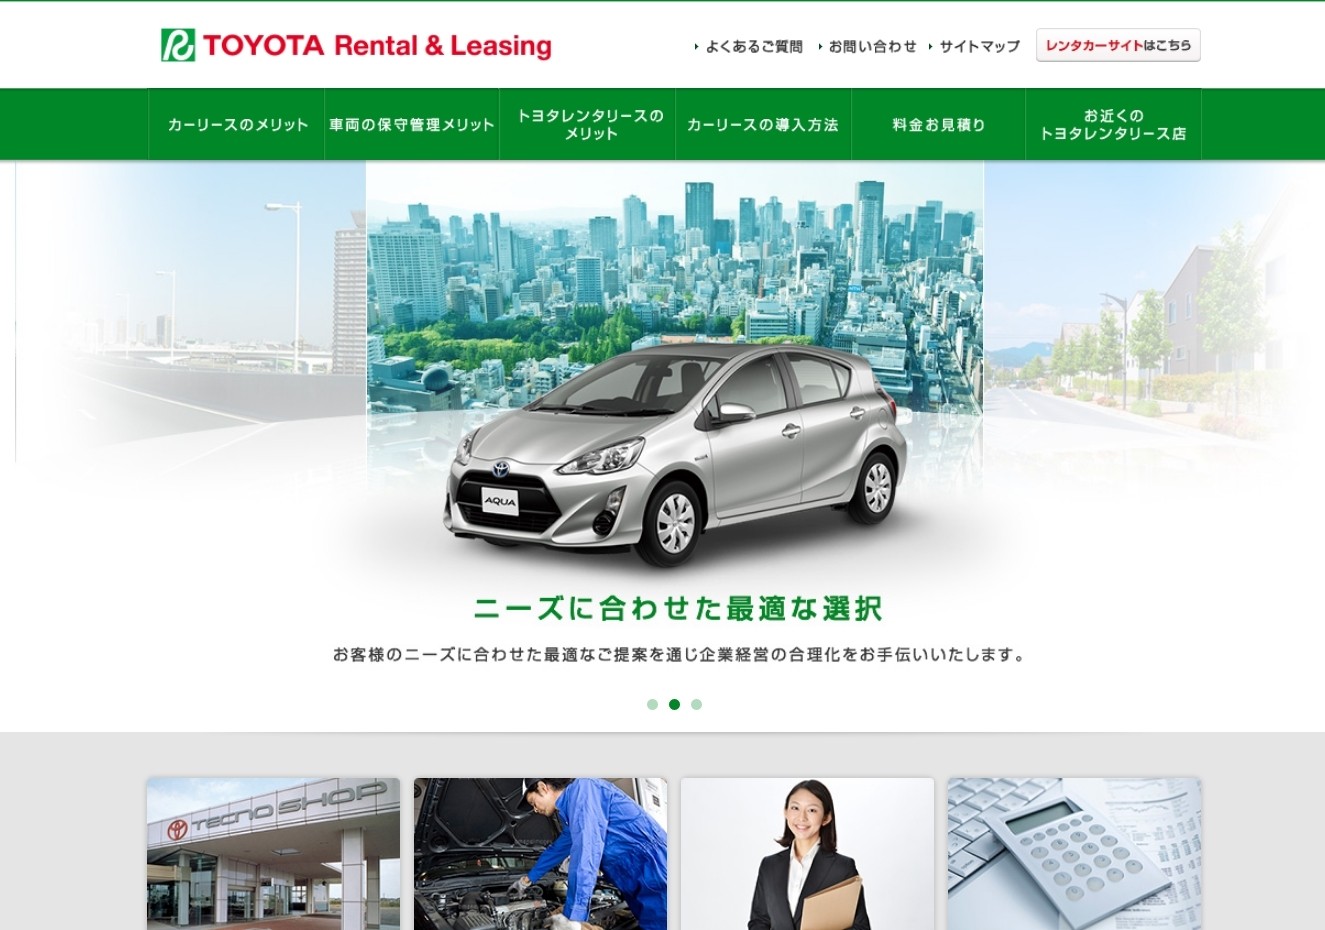 トヨタ自動車株式会社のトヨタカーリースサービス